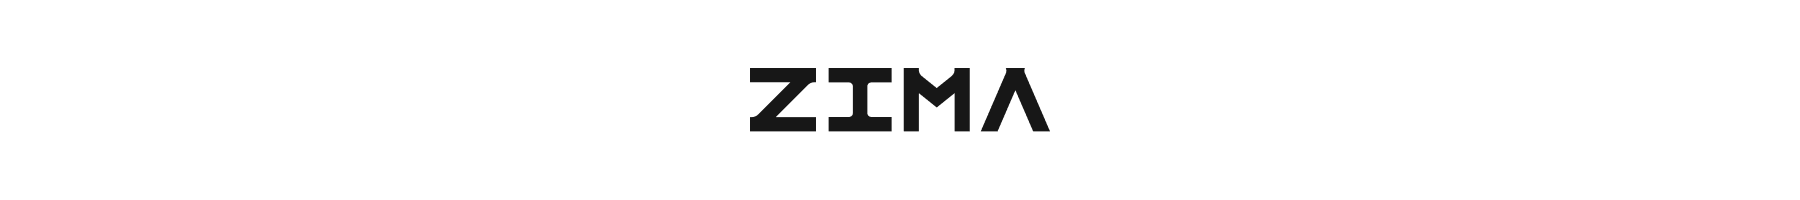 Zima Store Online